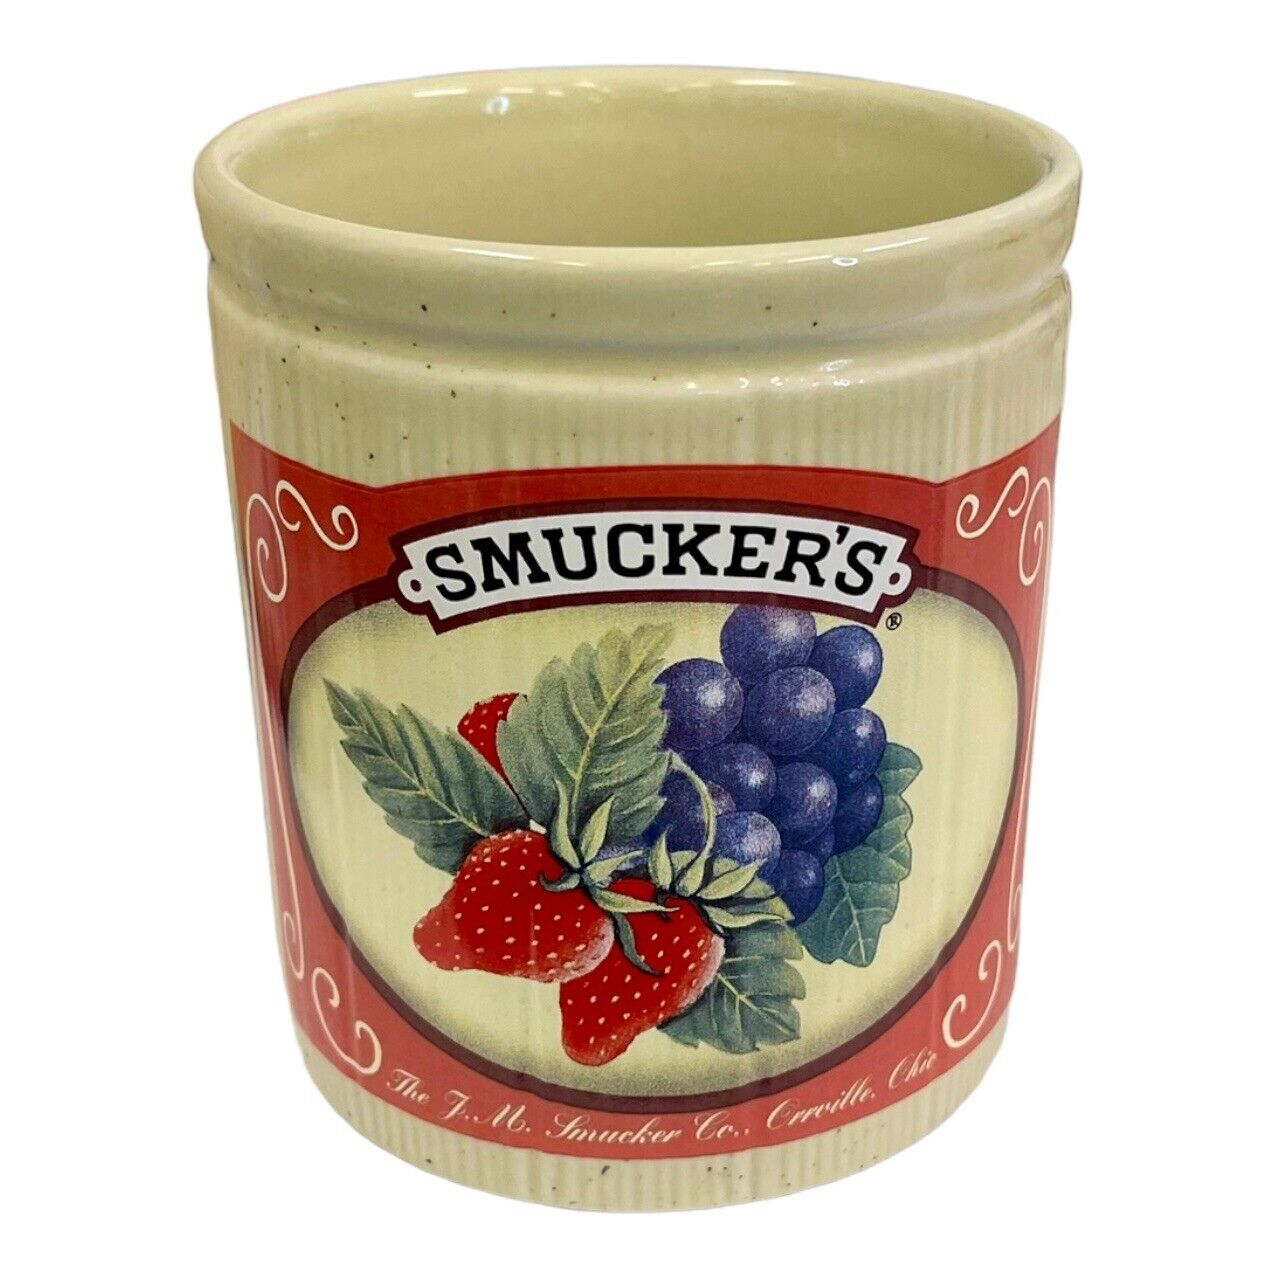 Vintage J. M. Smuckers Ceramic Jam Jar Crock #31882 Promotional